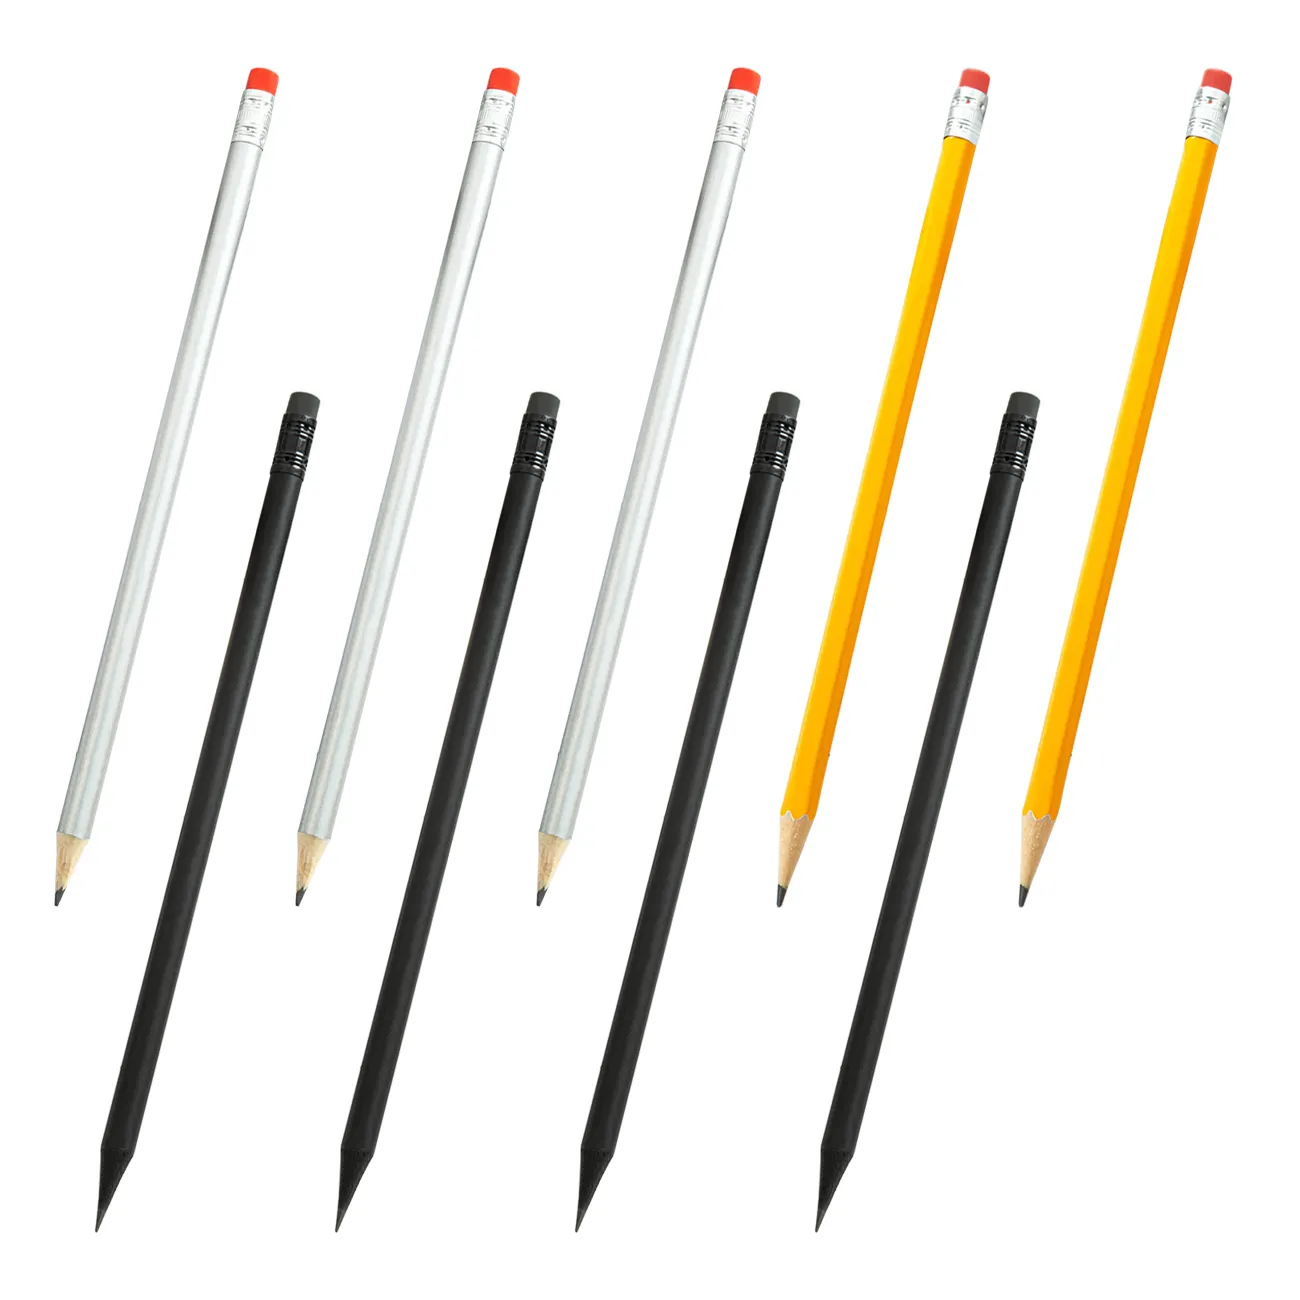 ดินสอไม้สีดำพิมพ์โลโก้ Cus,ดินสอ HB ดินสอหลากสี